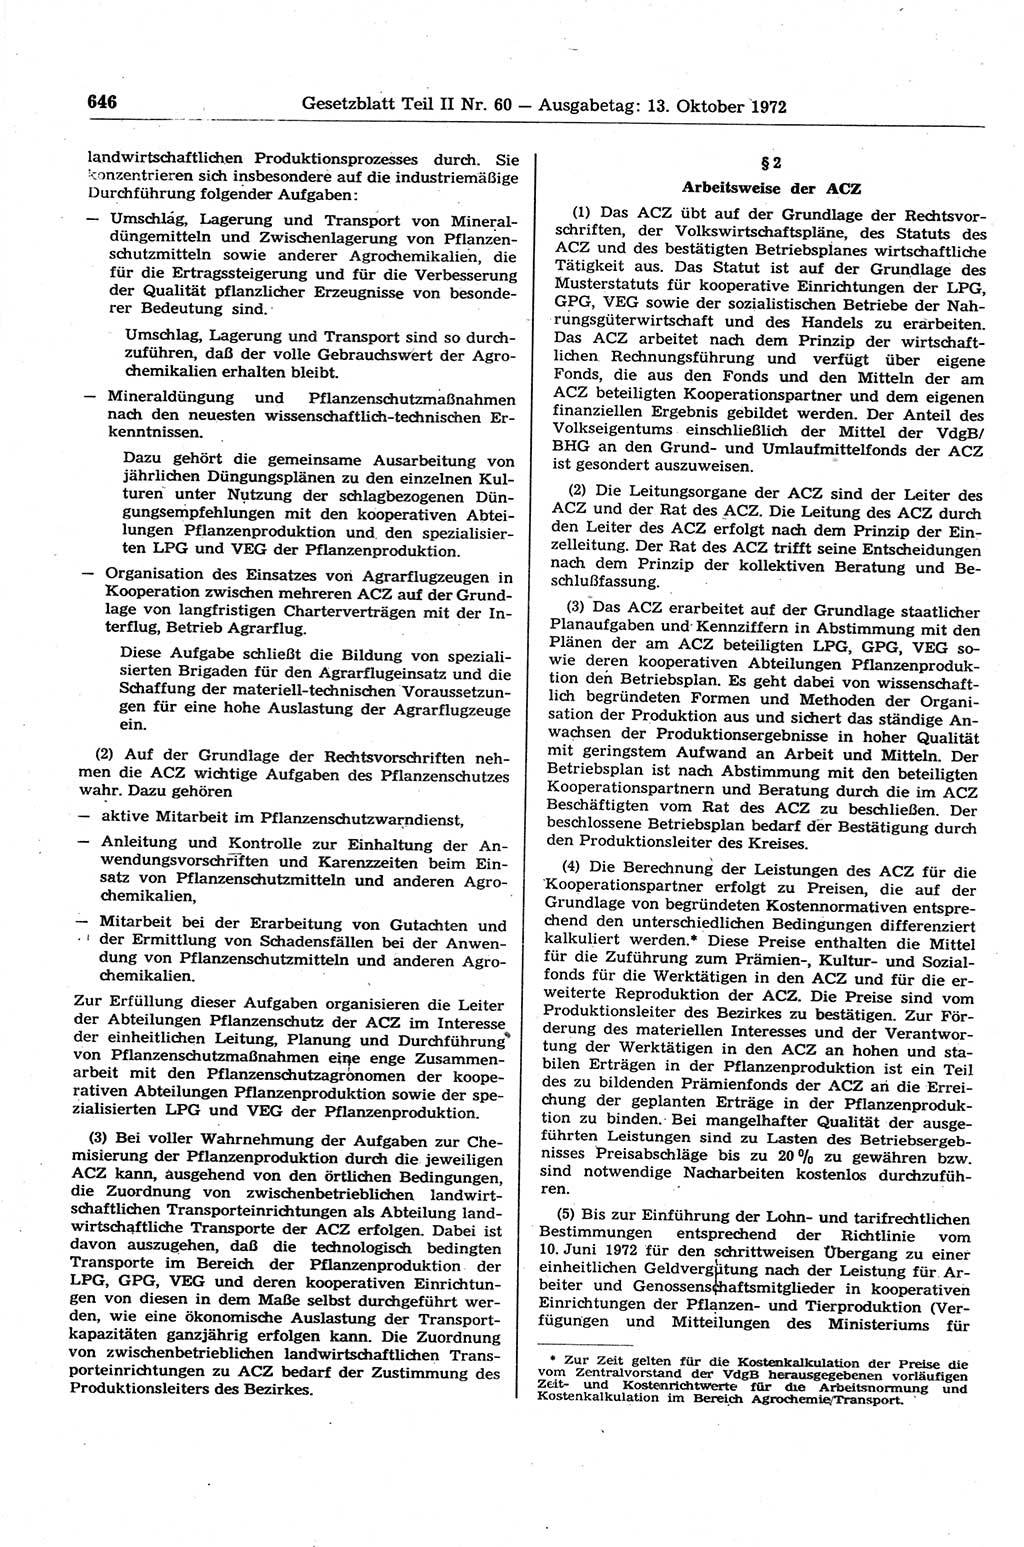 Gesetzblatt (GBl.) der Deutschen Demokratischen Republik (DDR) Teil ⅠⅠ 1972, Seite 646 (GBl. DDR ⅠⅠ 1972, S. 646)